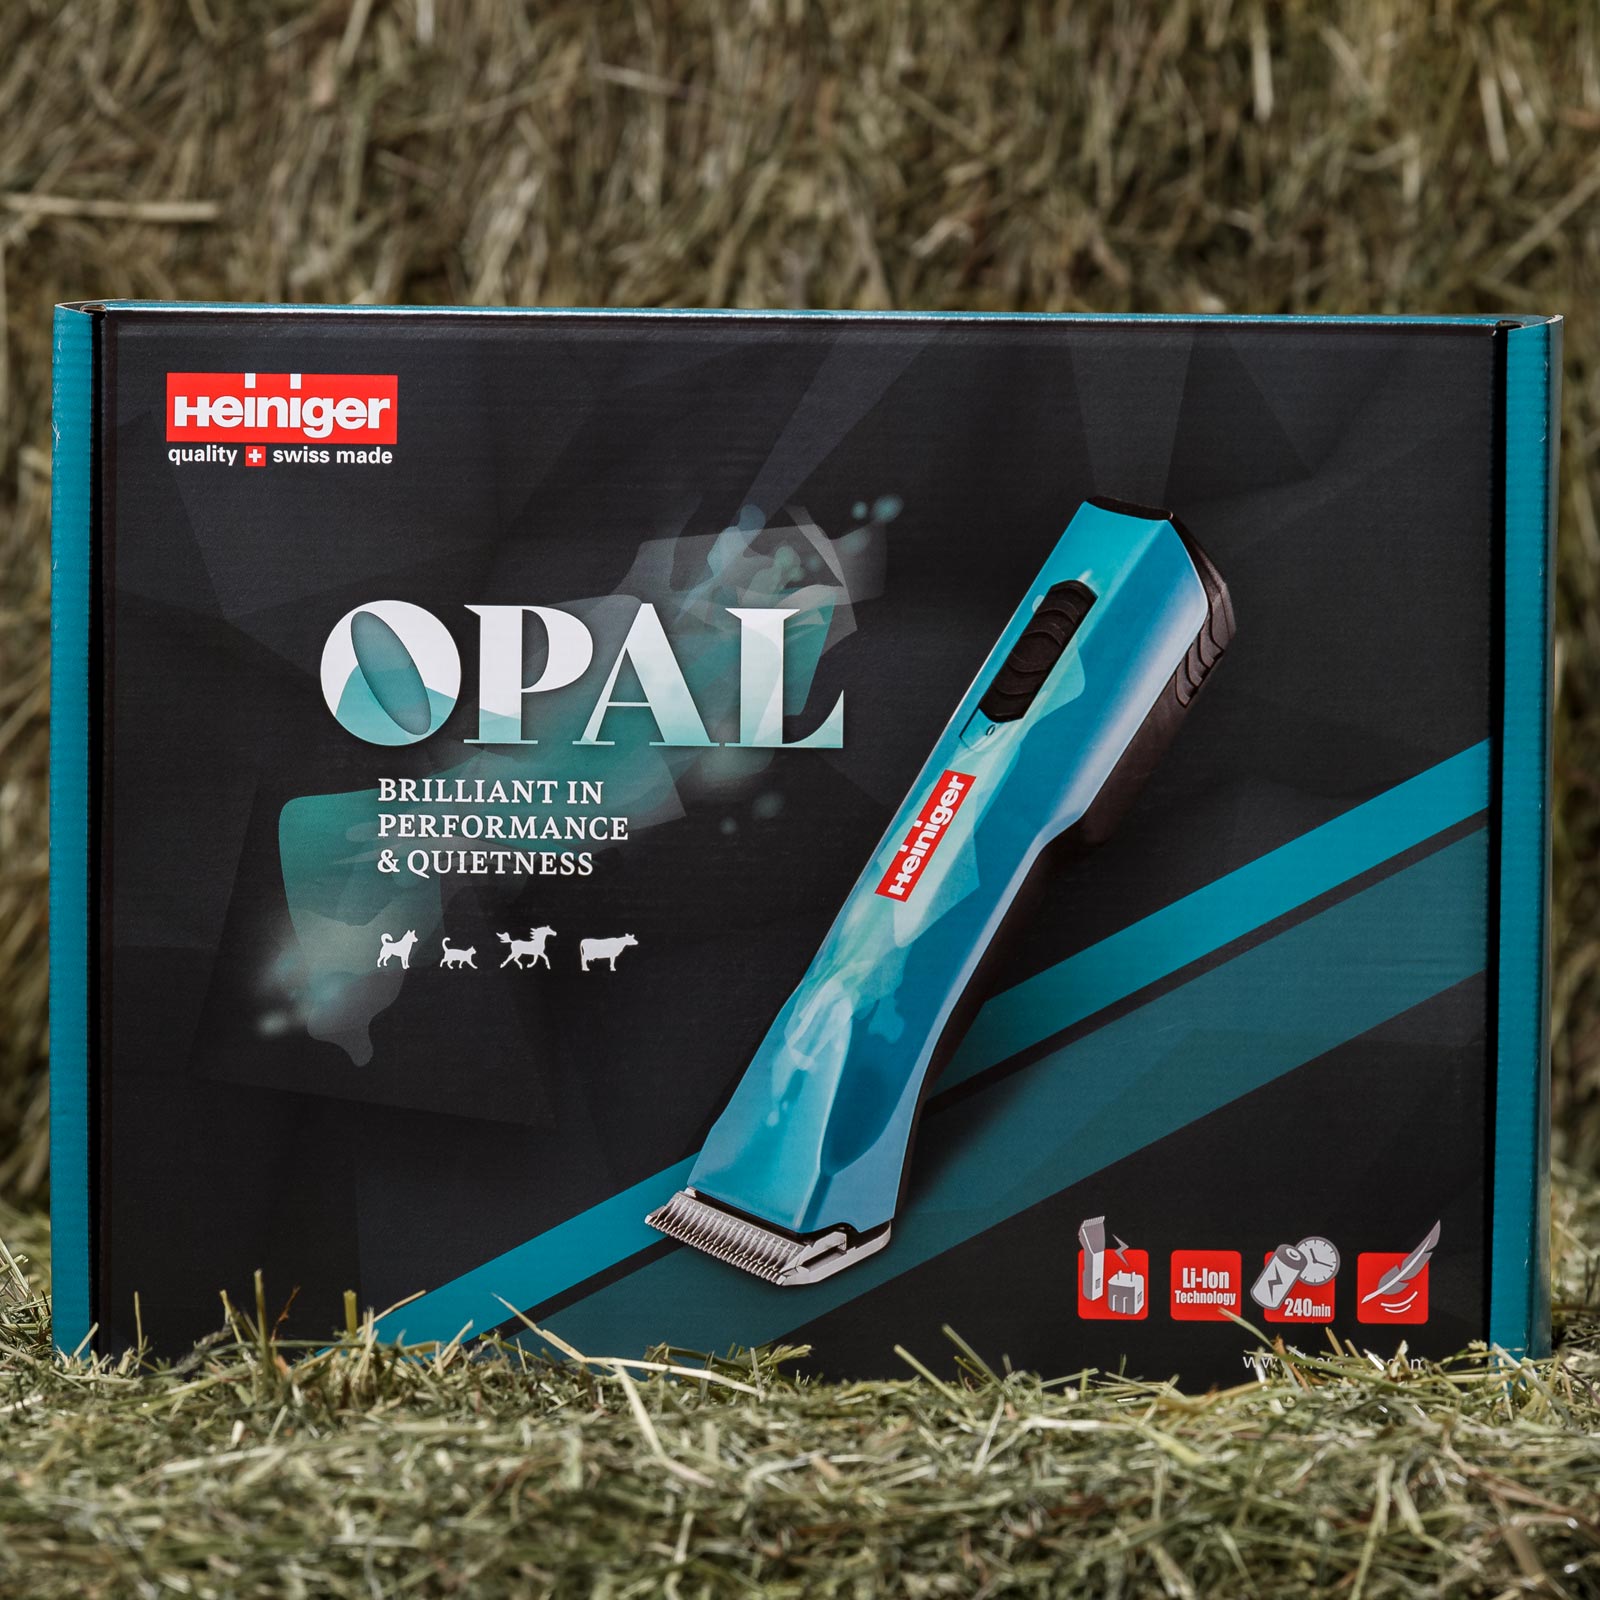 Heiniger Opal Clipper 1x battery